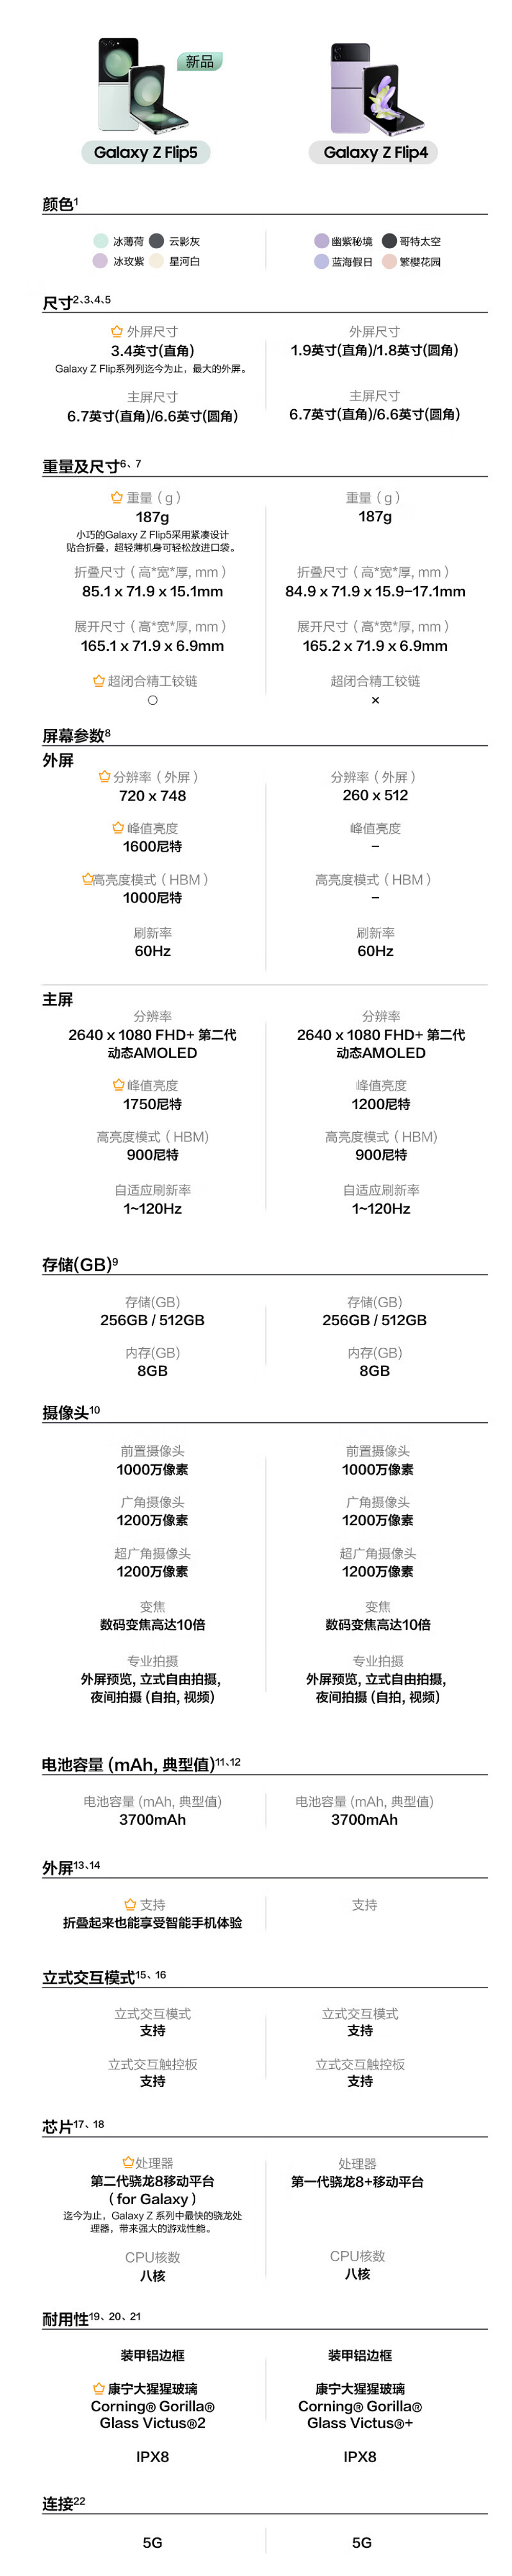 三星 Galaxy Z Flip5 折叠机降价 300 元，7199 元起 - 3